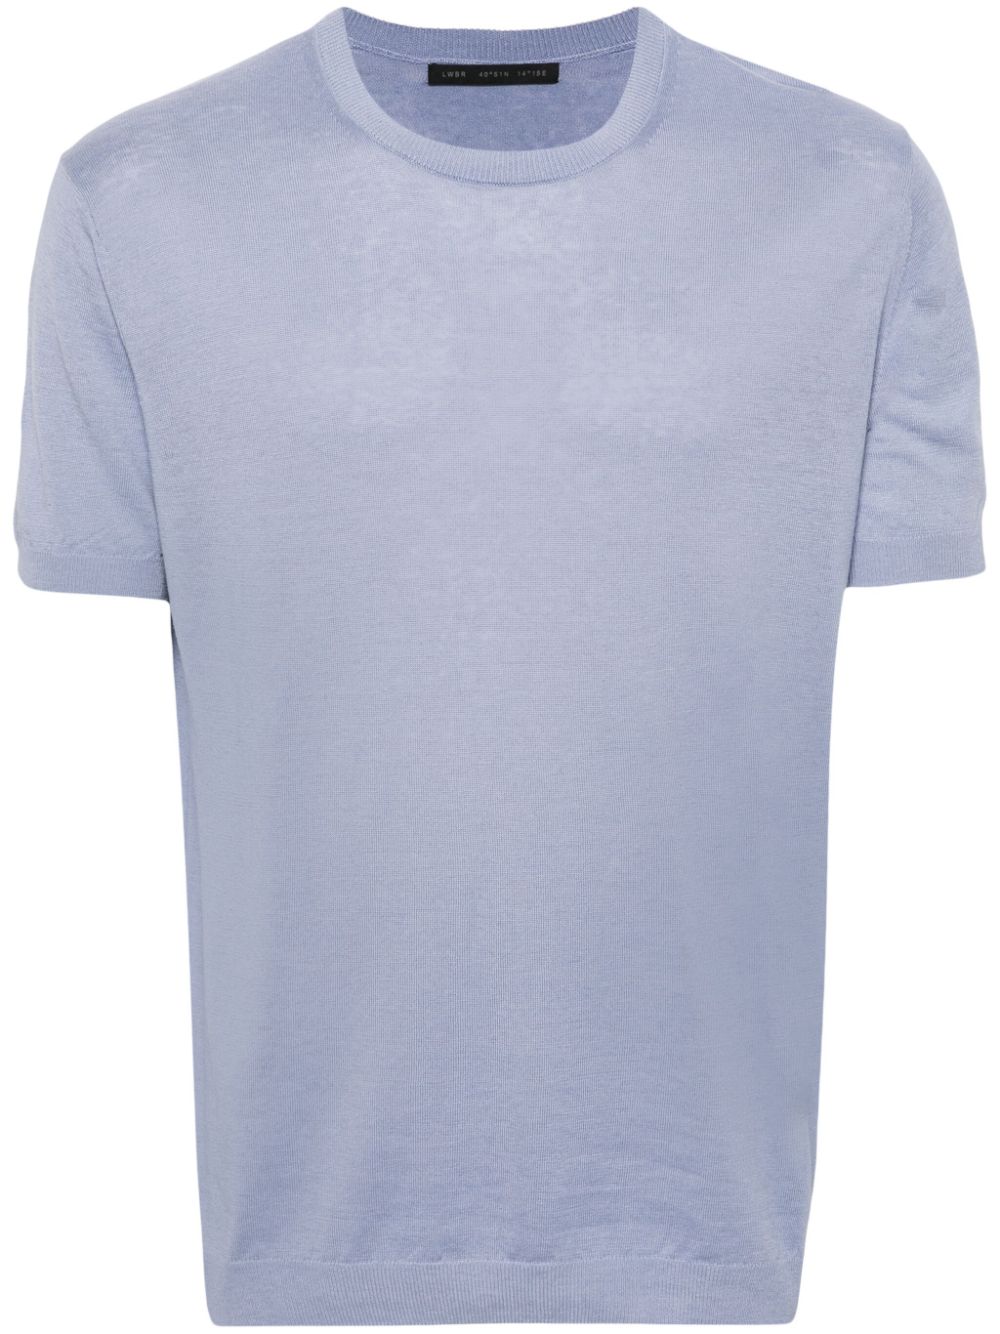 Low Brand short-sleeve knitted T-shirt - Blau von Low Brand